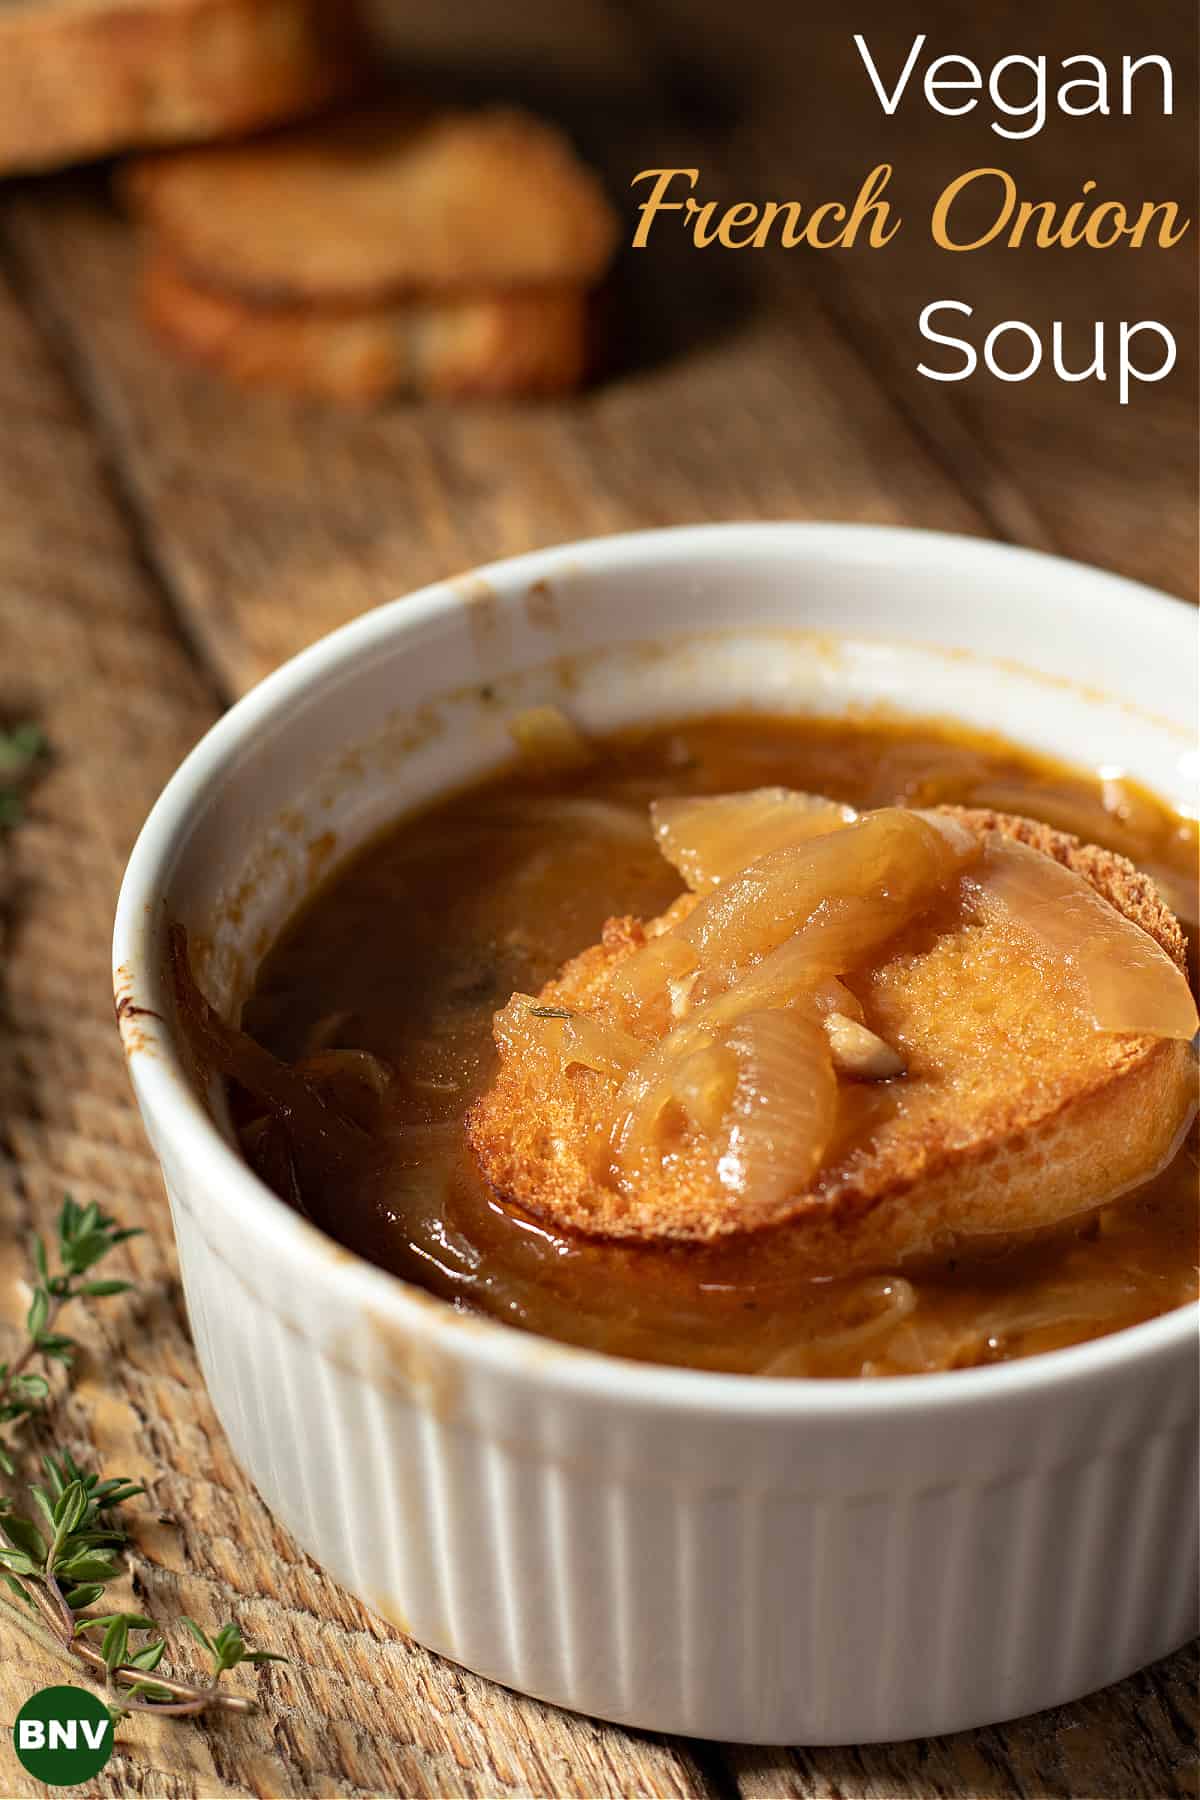 A bowl of vegan French onion soup